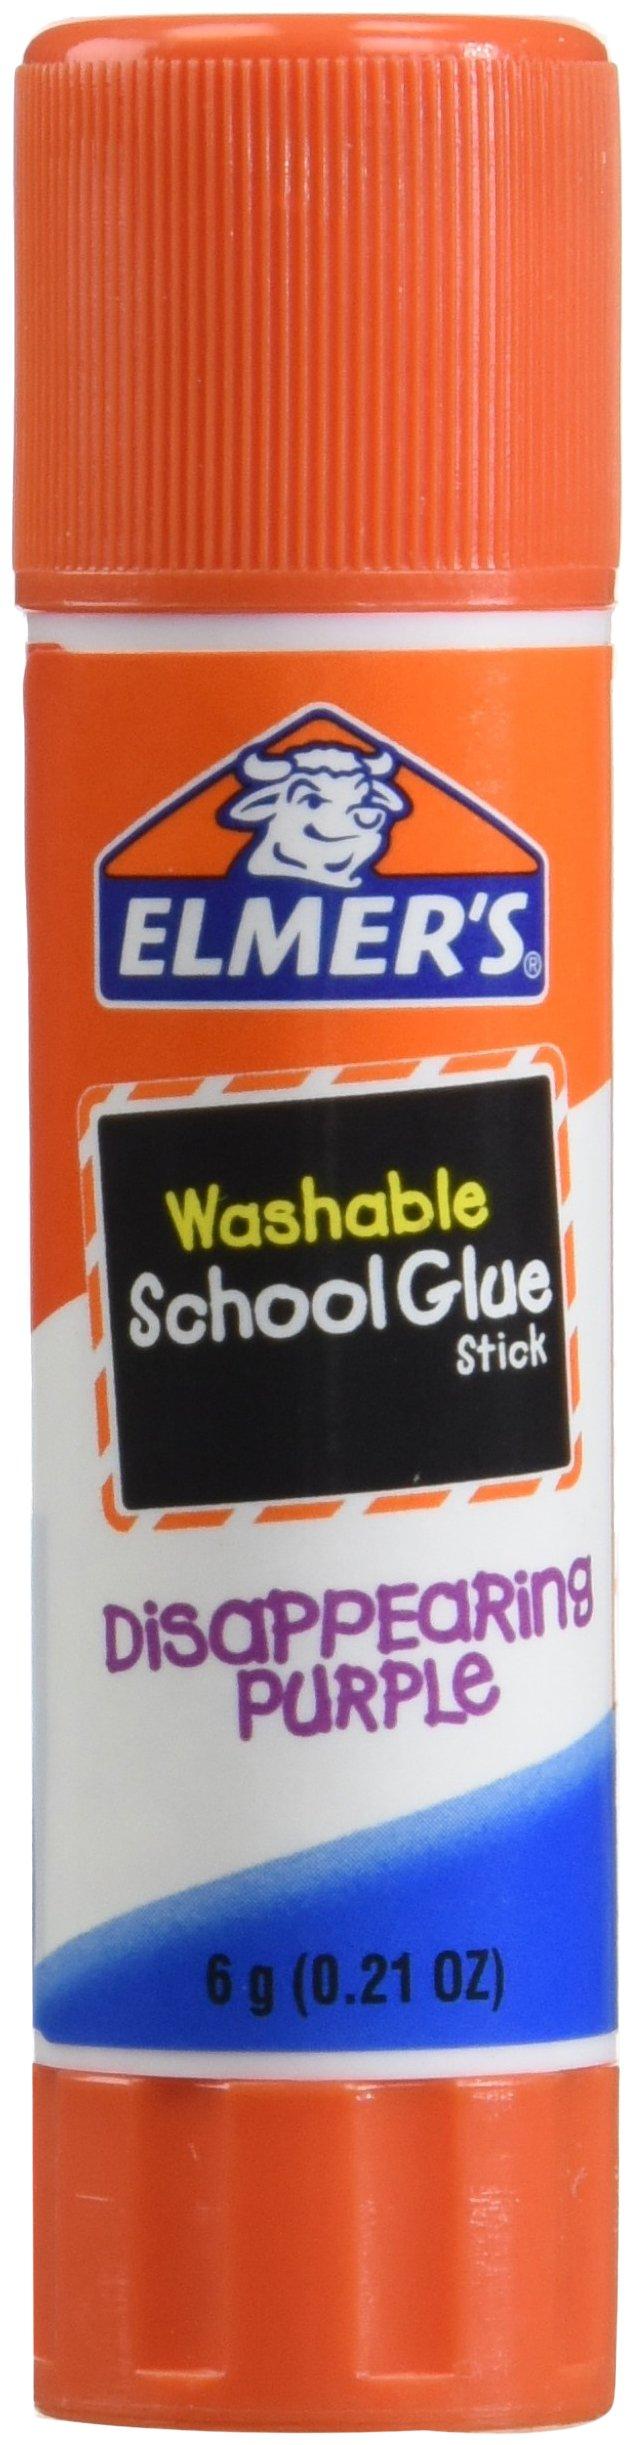 Elmer's Washable School Glue -Clear